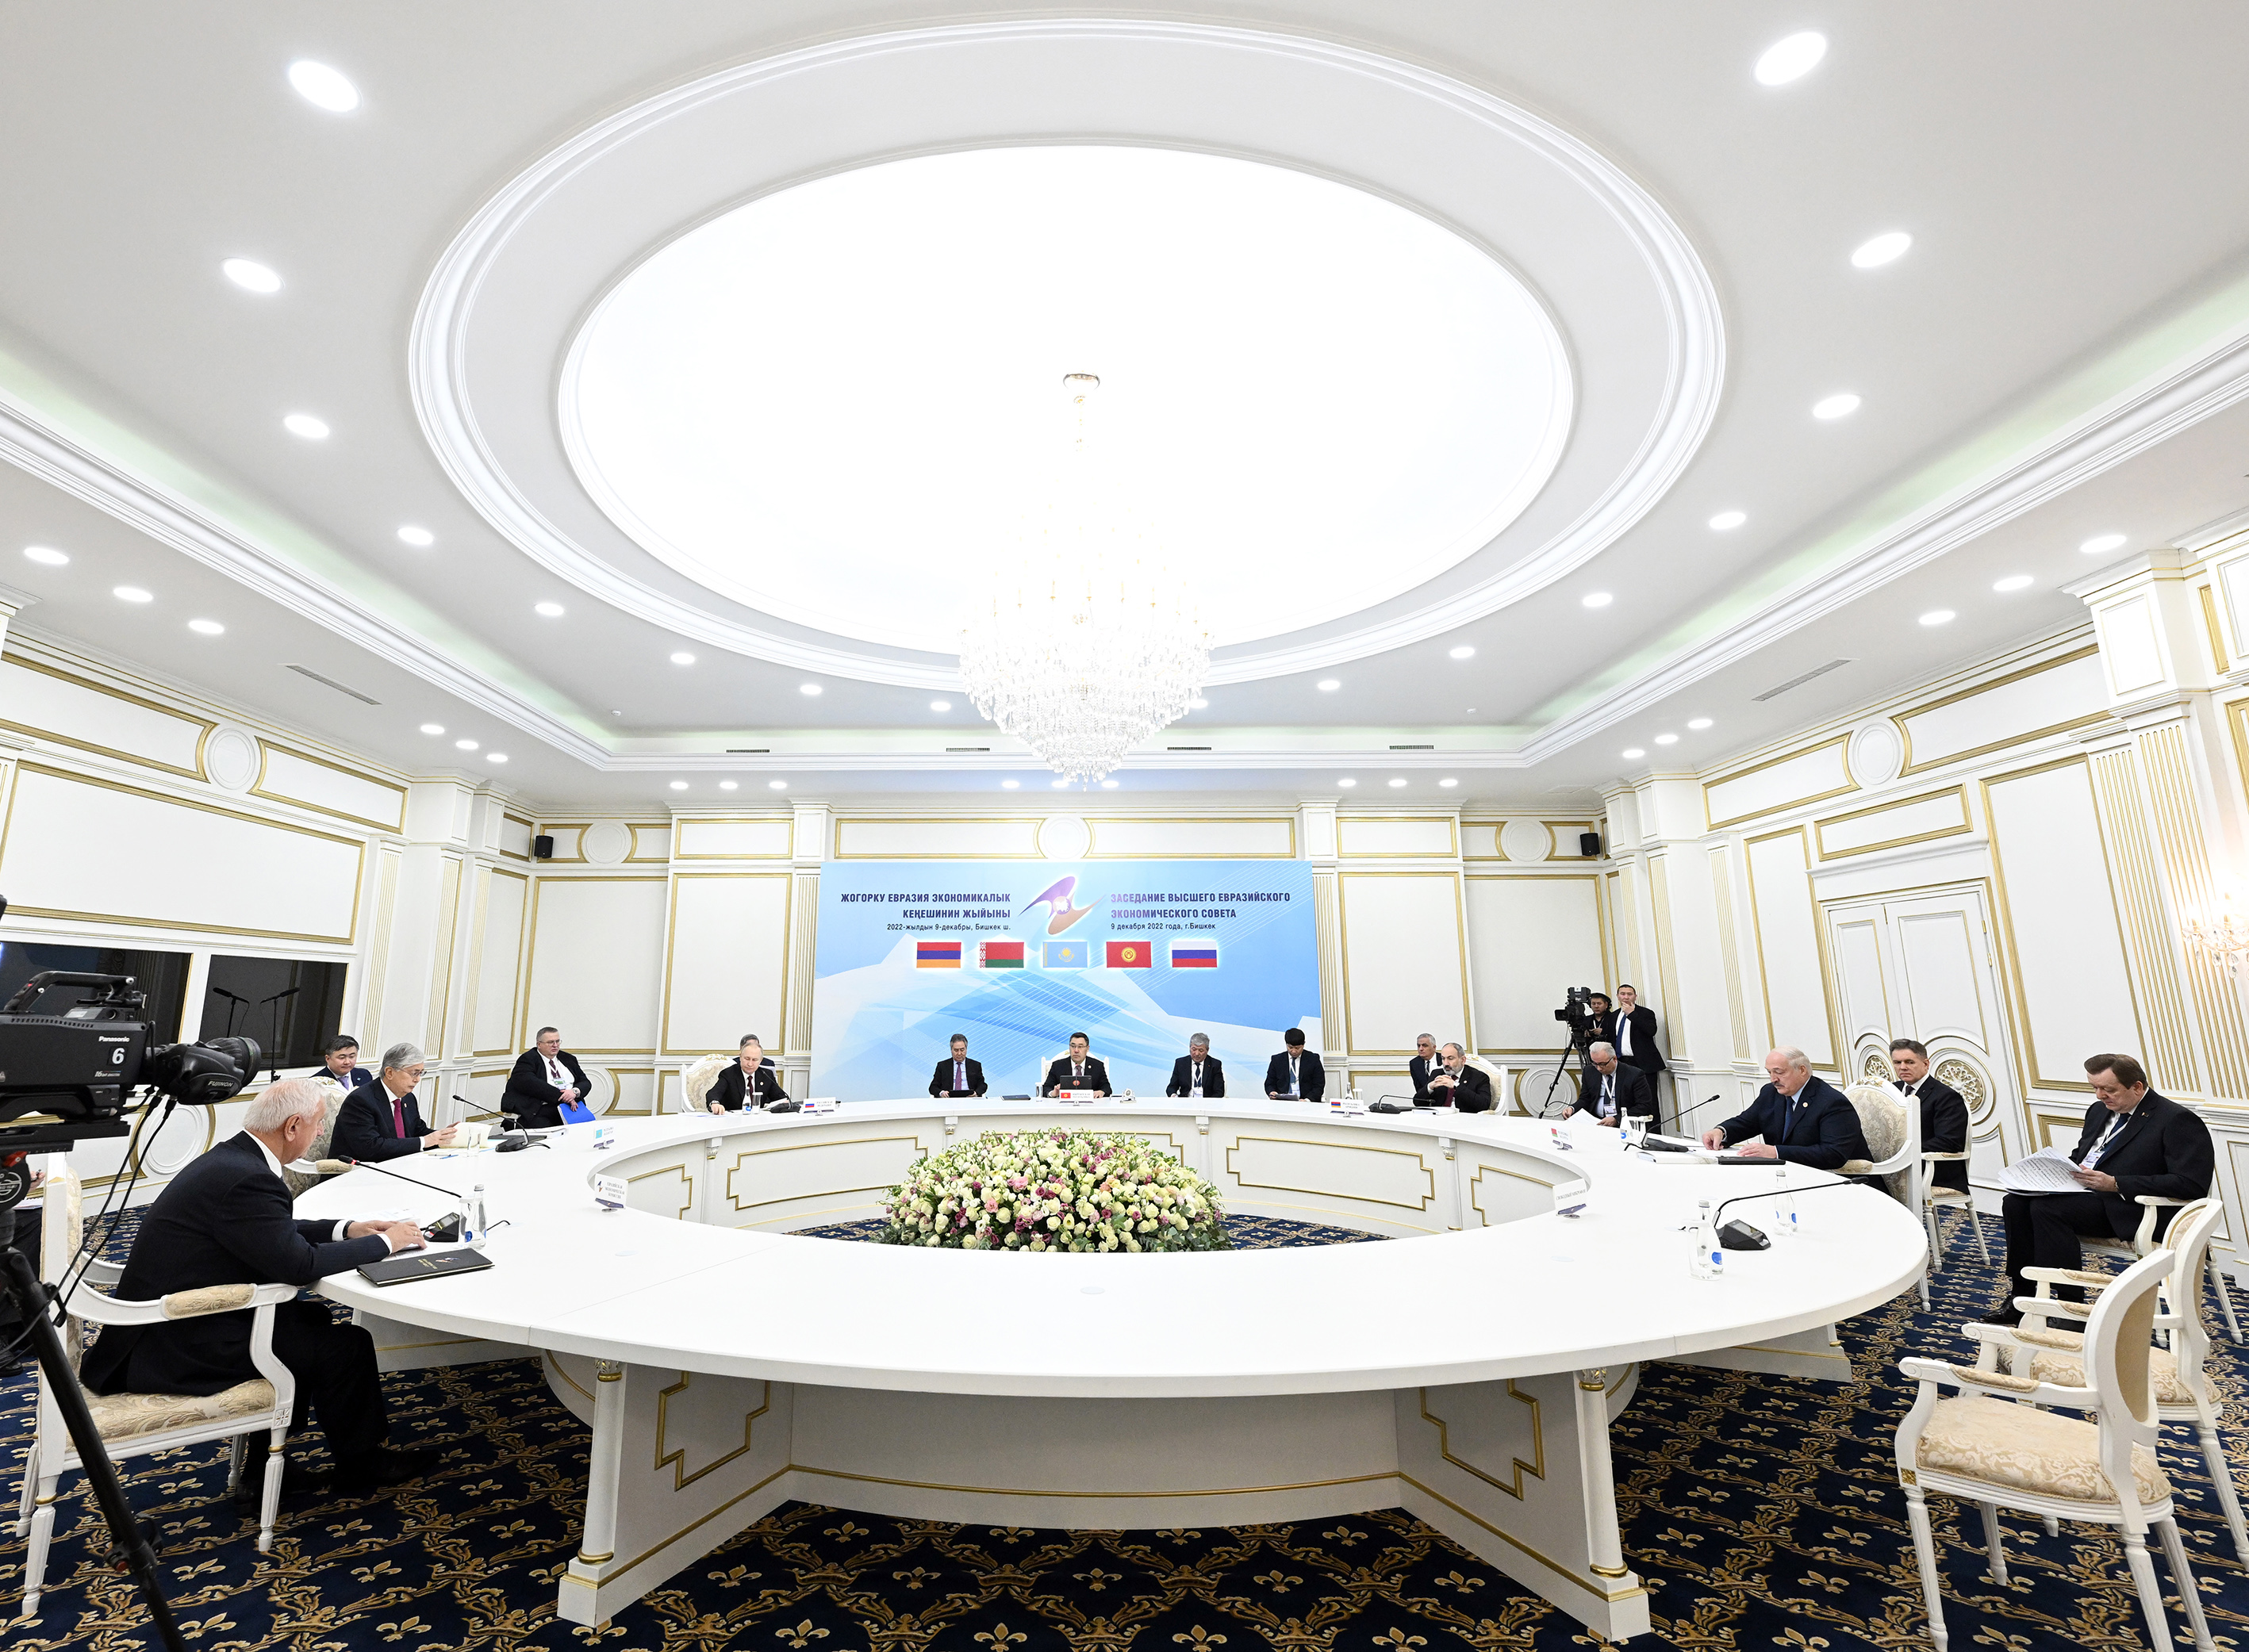 Https eaeunion org. Саммит ЕАЭС Бишкек декабрь 2022. Высший Евразийский экономический совет. Высший Евразийский экономический совет 2022. Единый рынок услуг ЕАЭС.